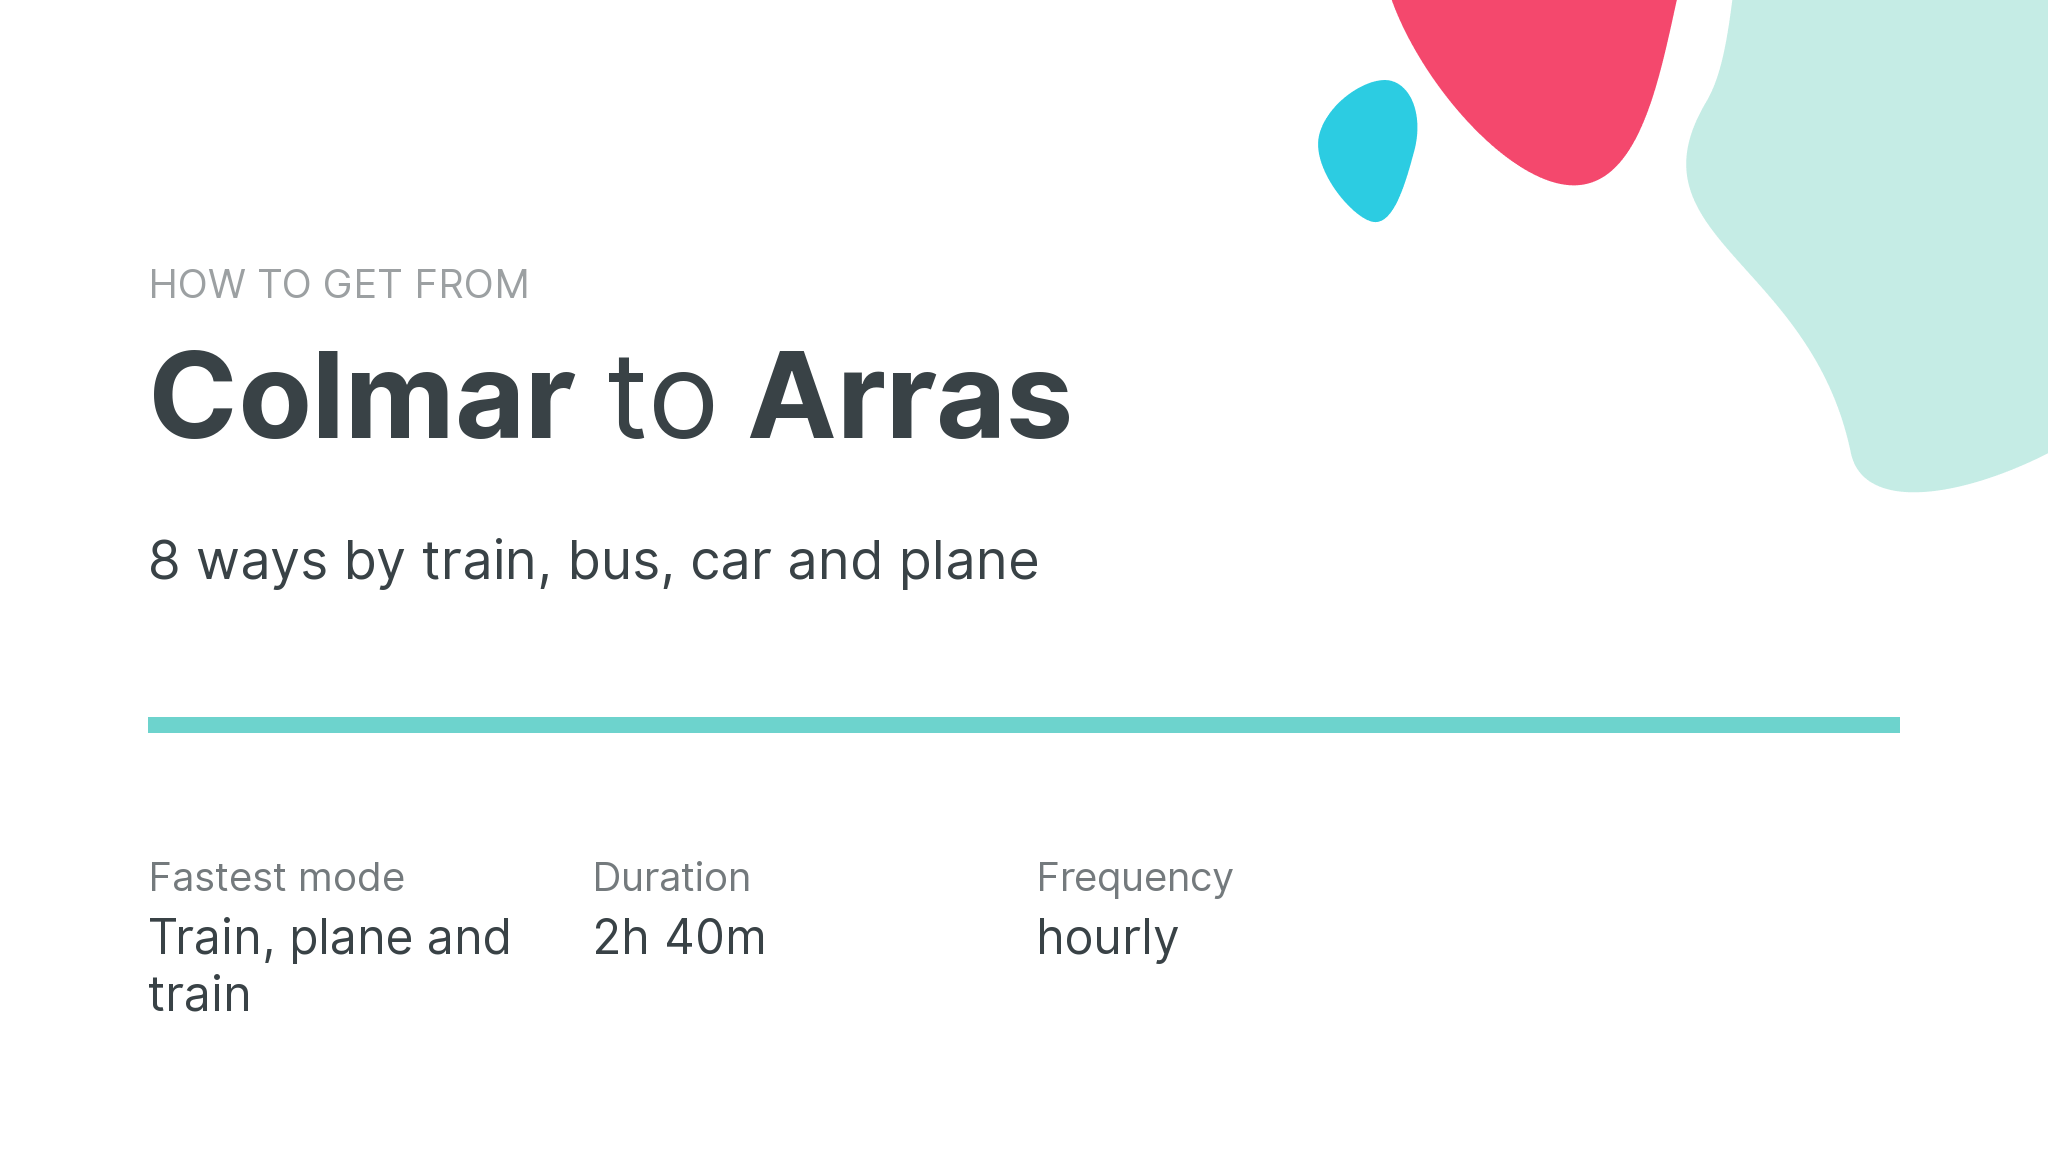 How do I get from Colmar to Arras